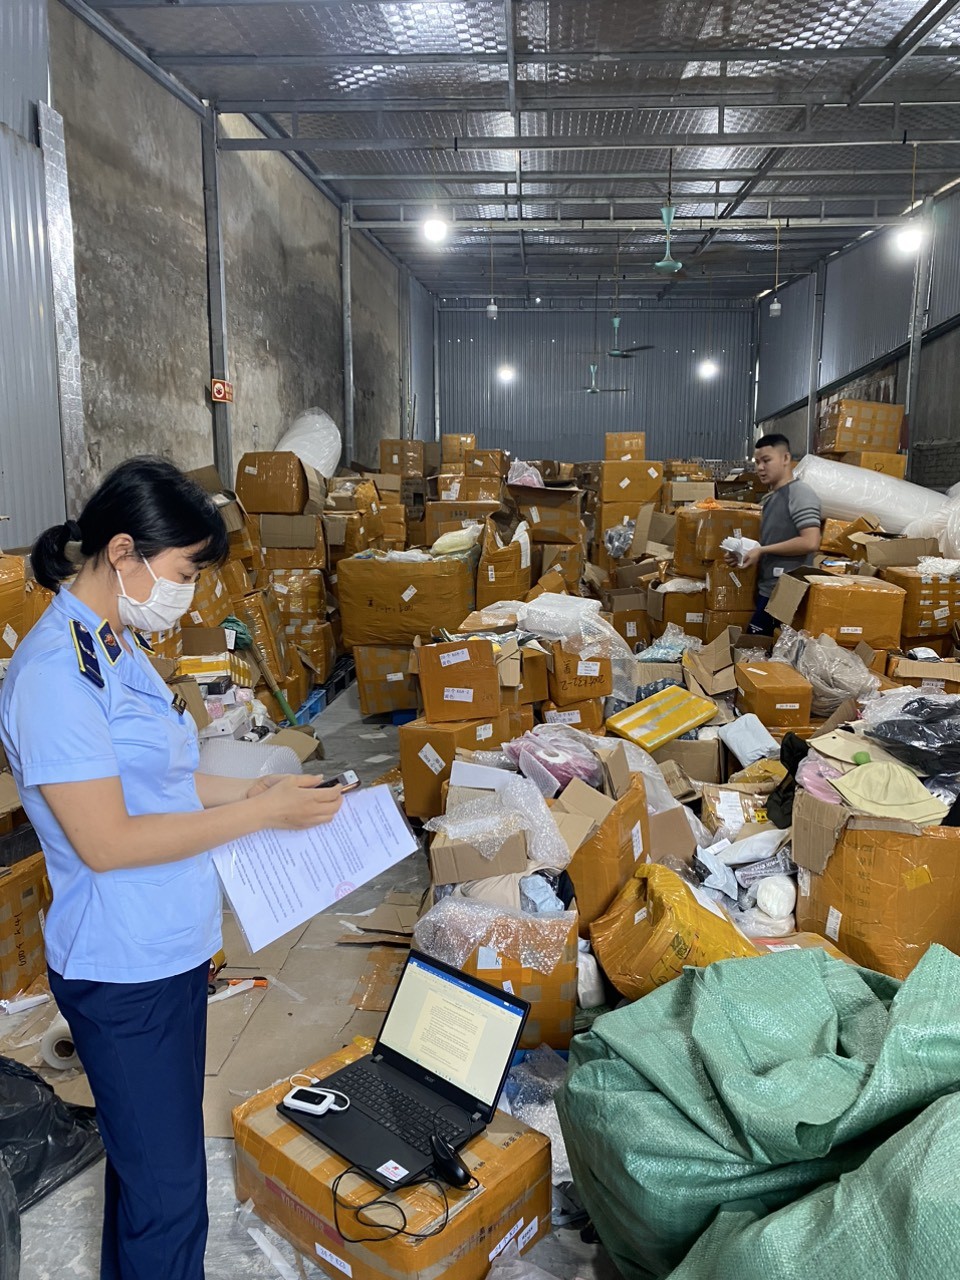 Phát hiện kho chứa hàng chục ngàn sản phẩm mỹ phẩm, đồ gia dụng vi phạm trên địa bàn Hà Nội